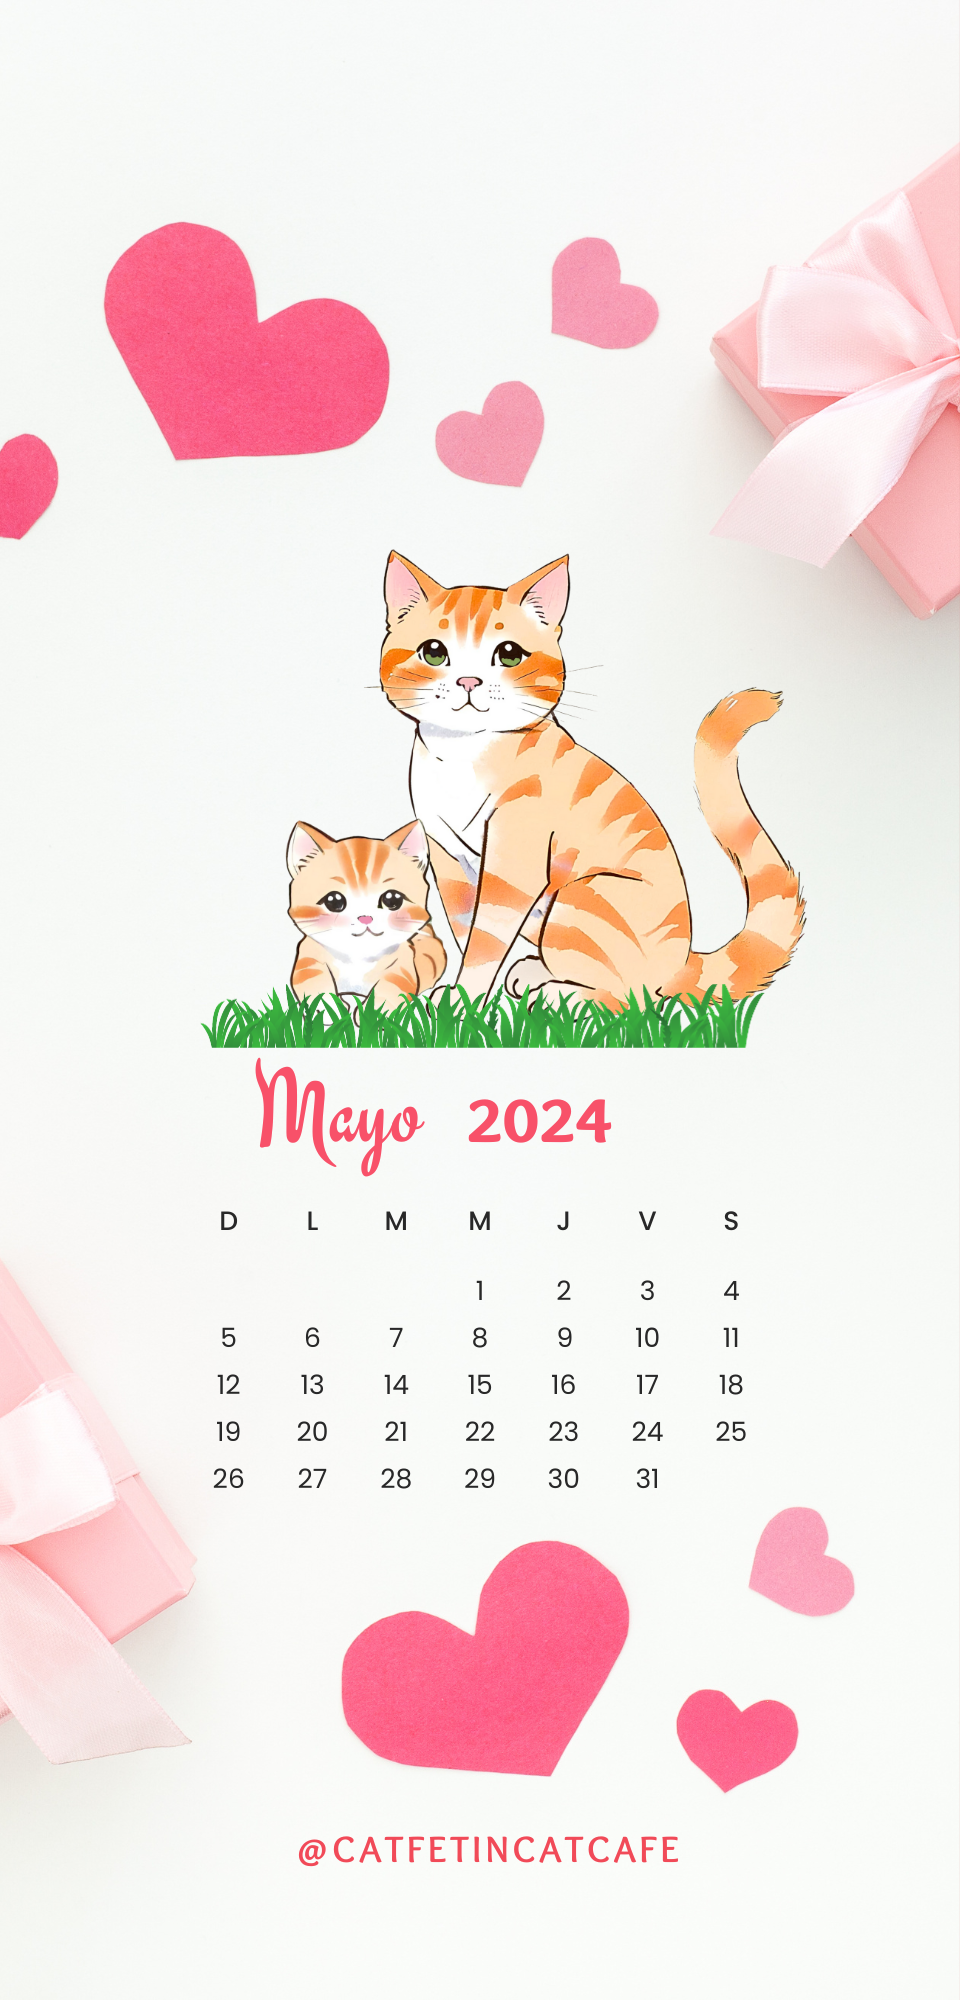 Mayo 2024 (1).png